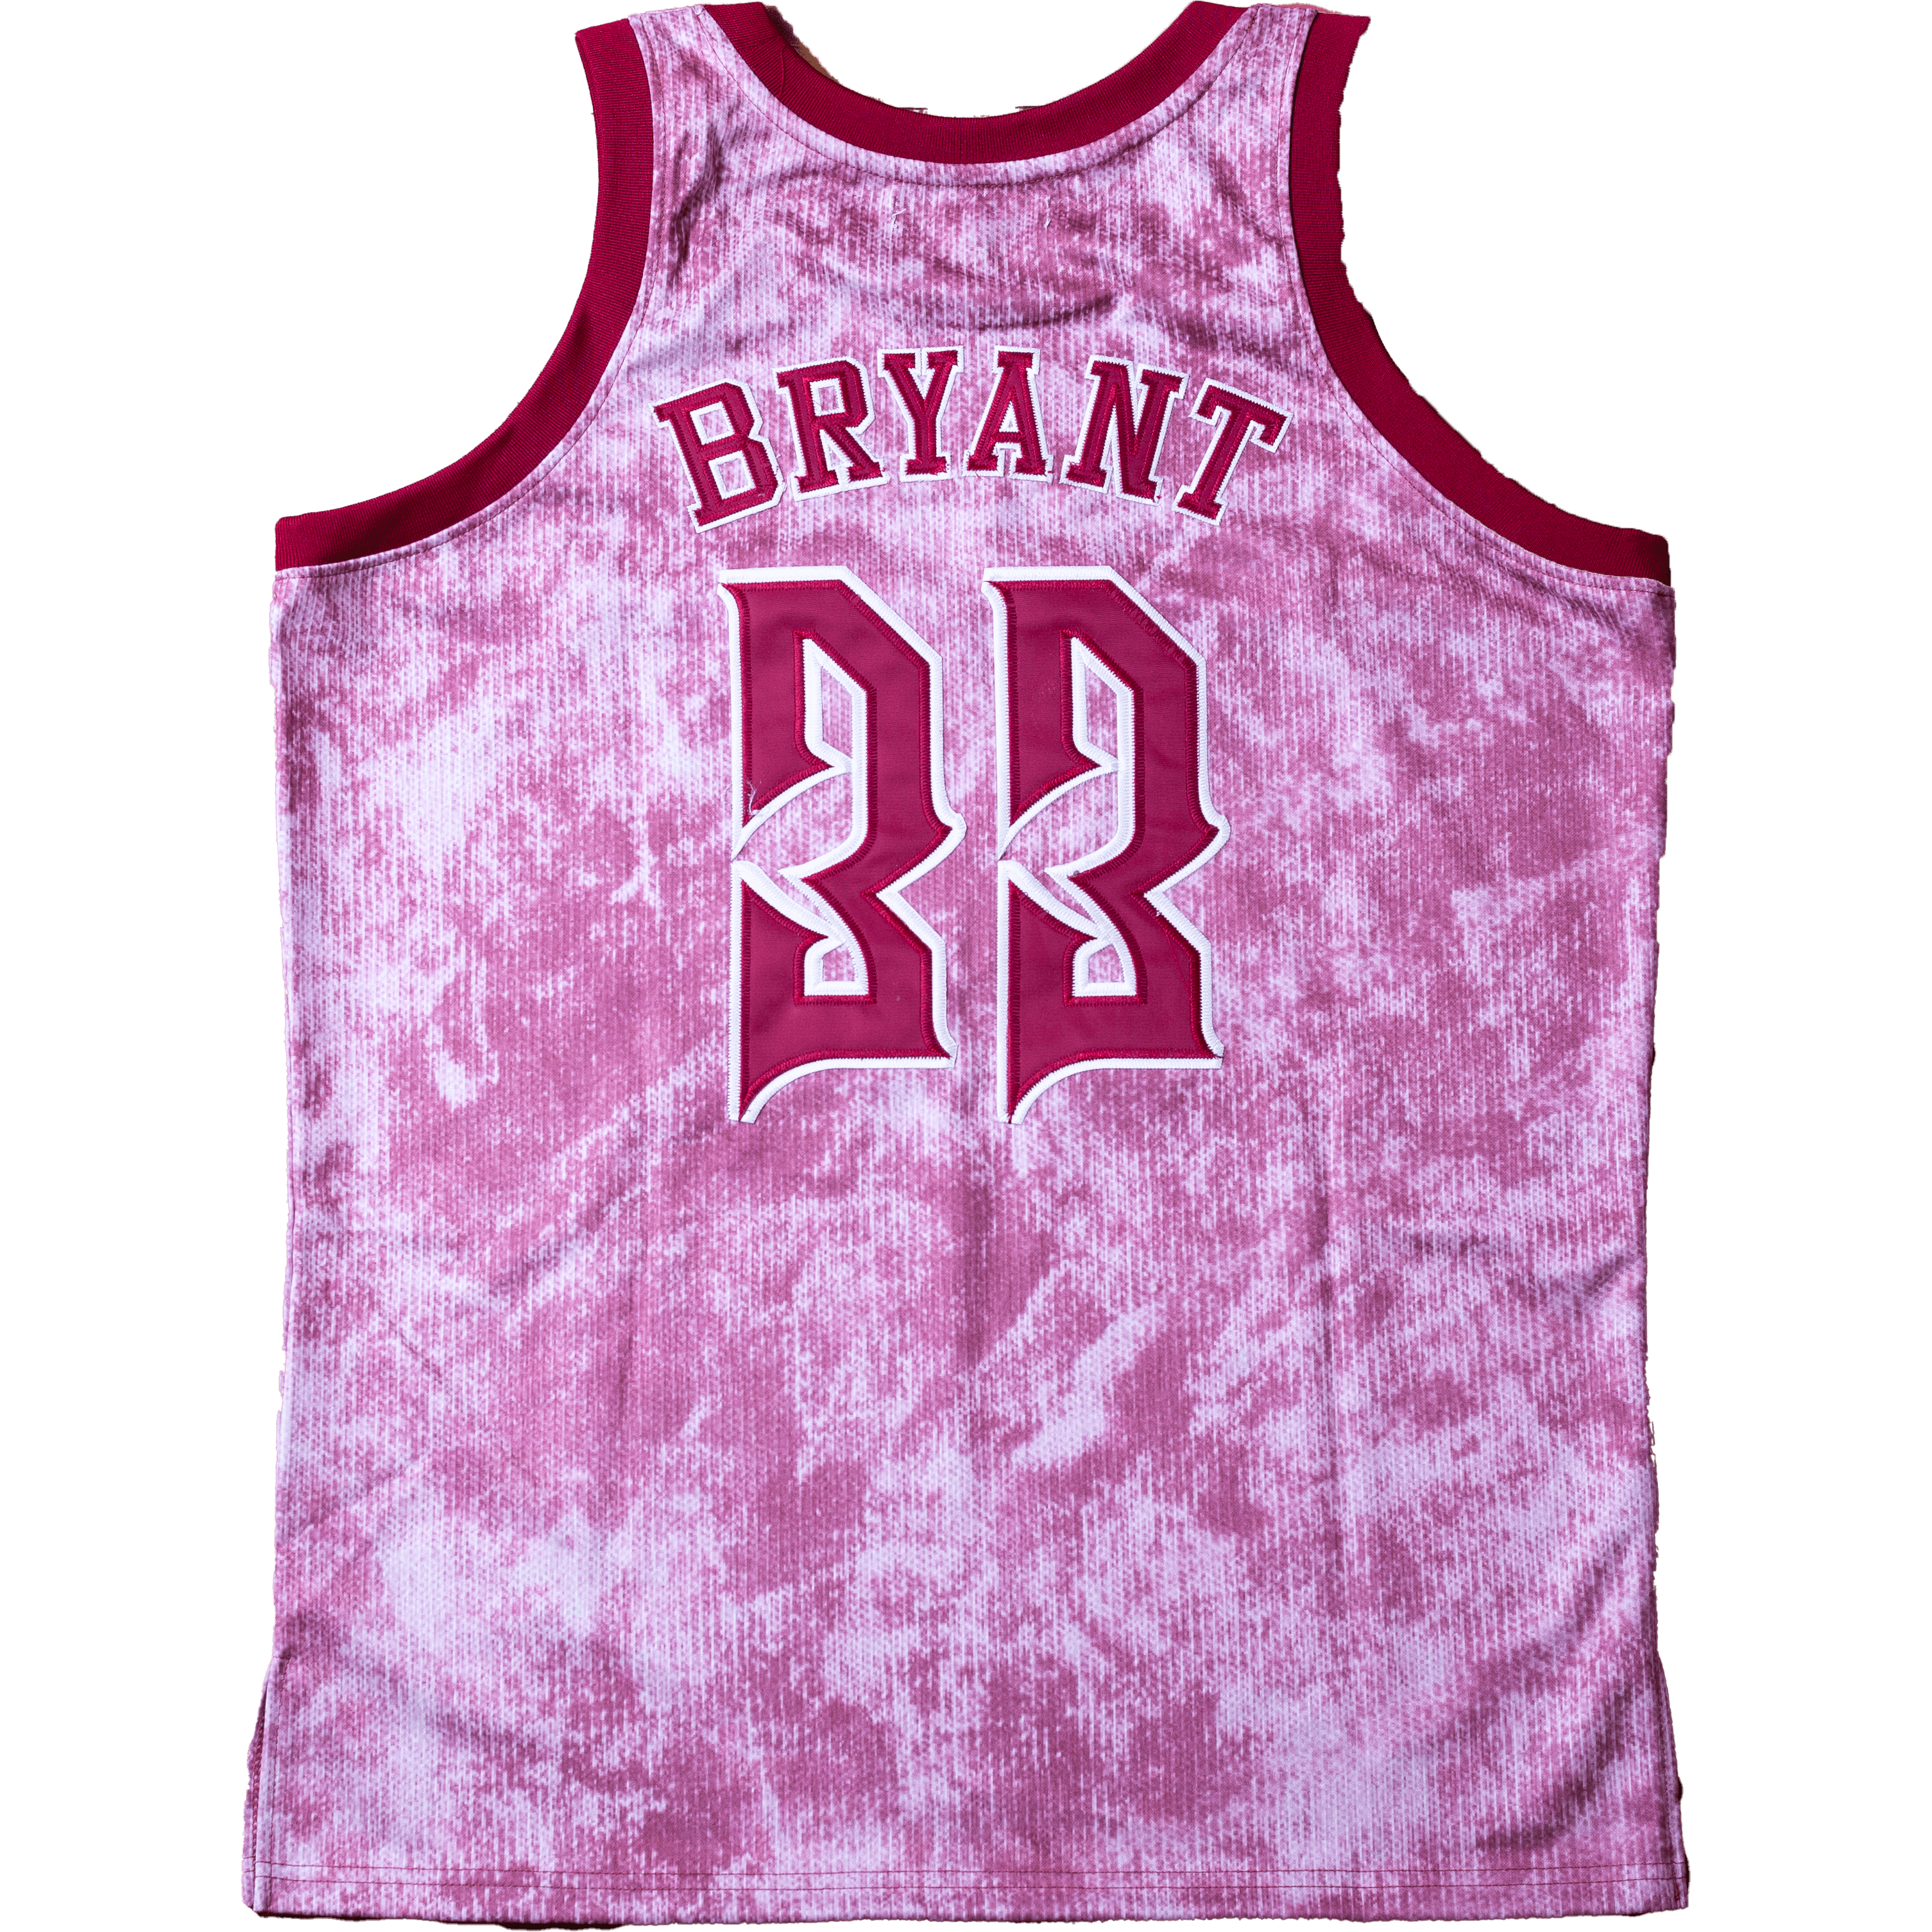 All Star Elite - Kobe Bryant Lower Merion basketball